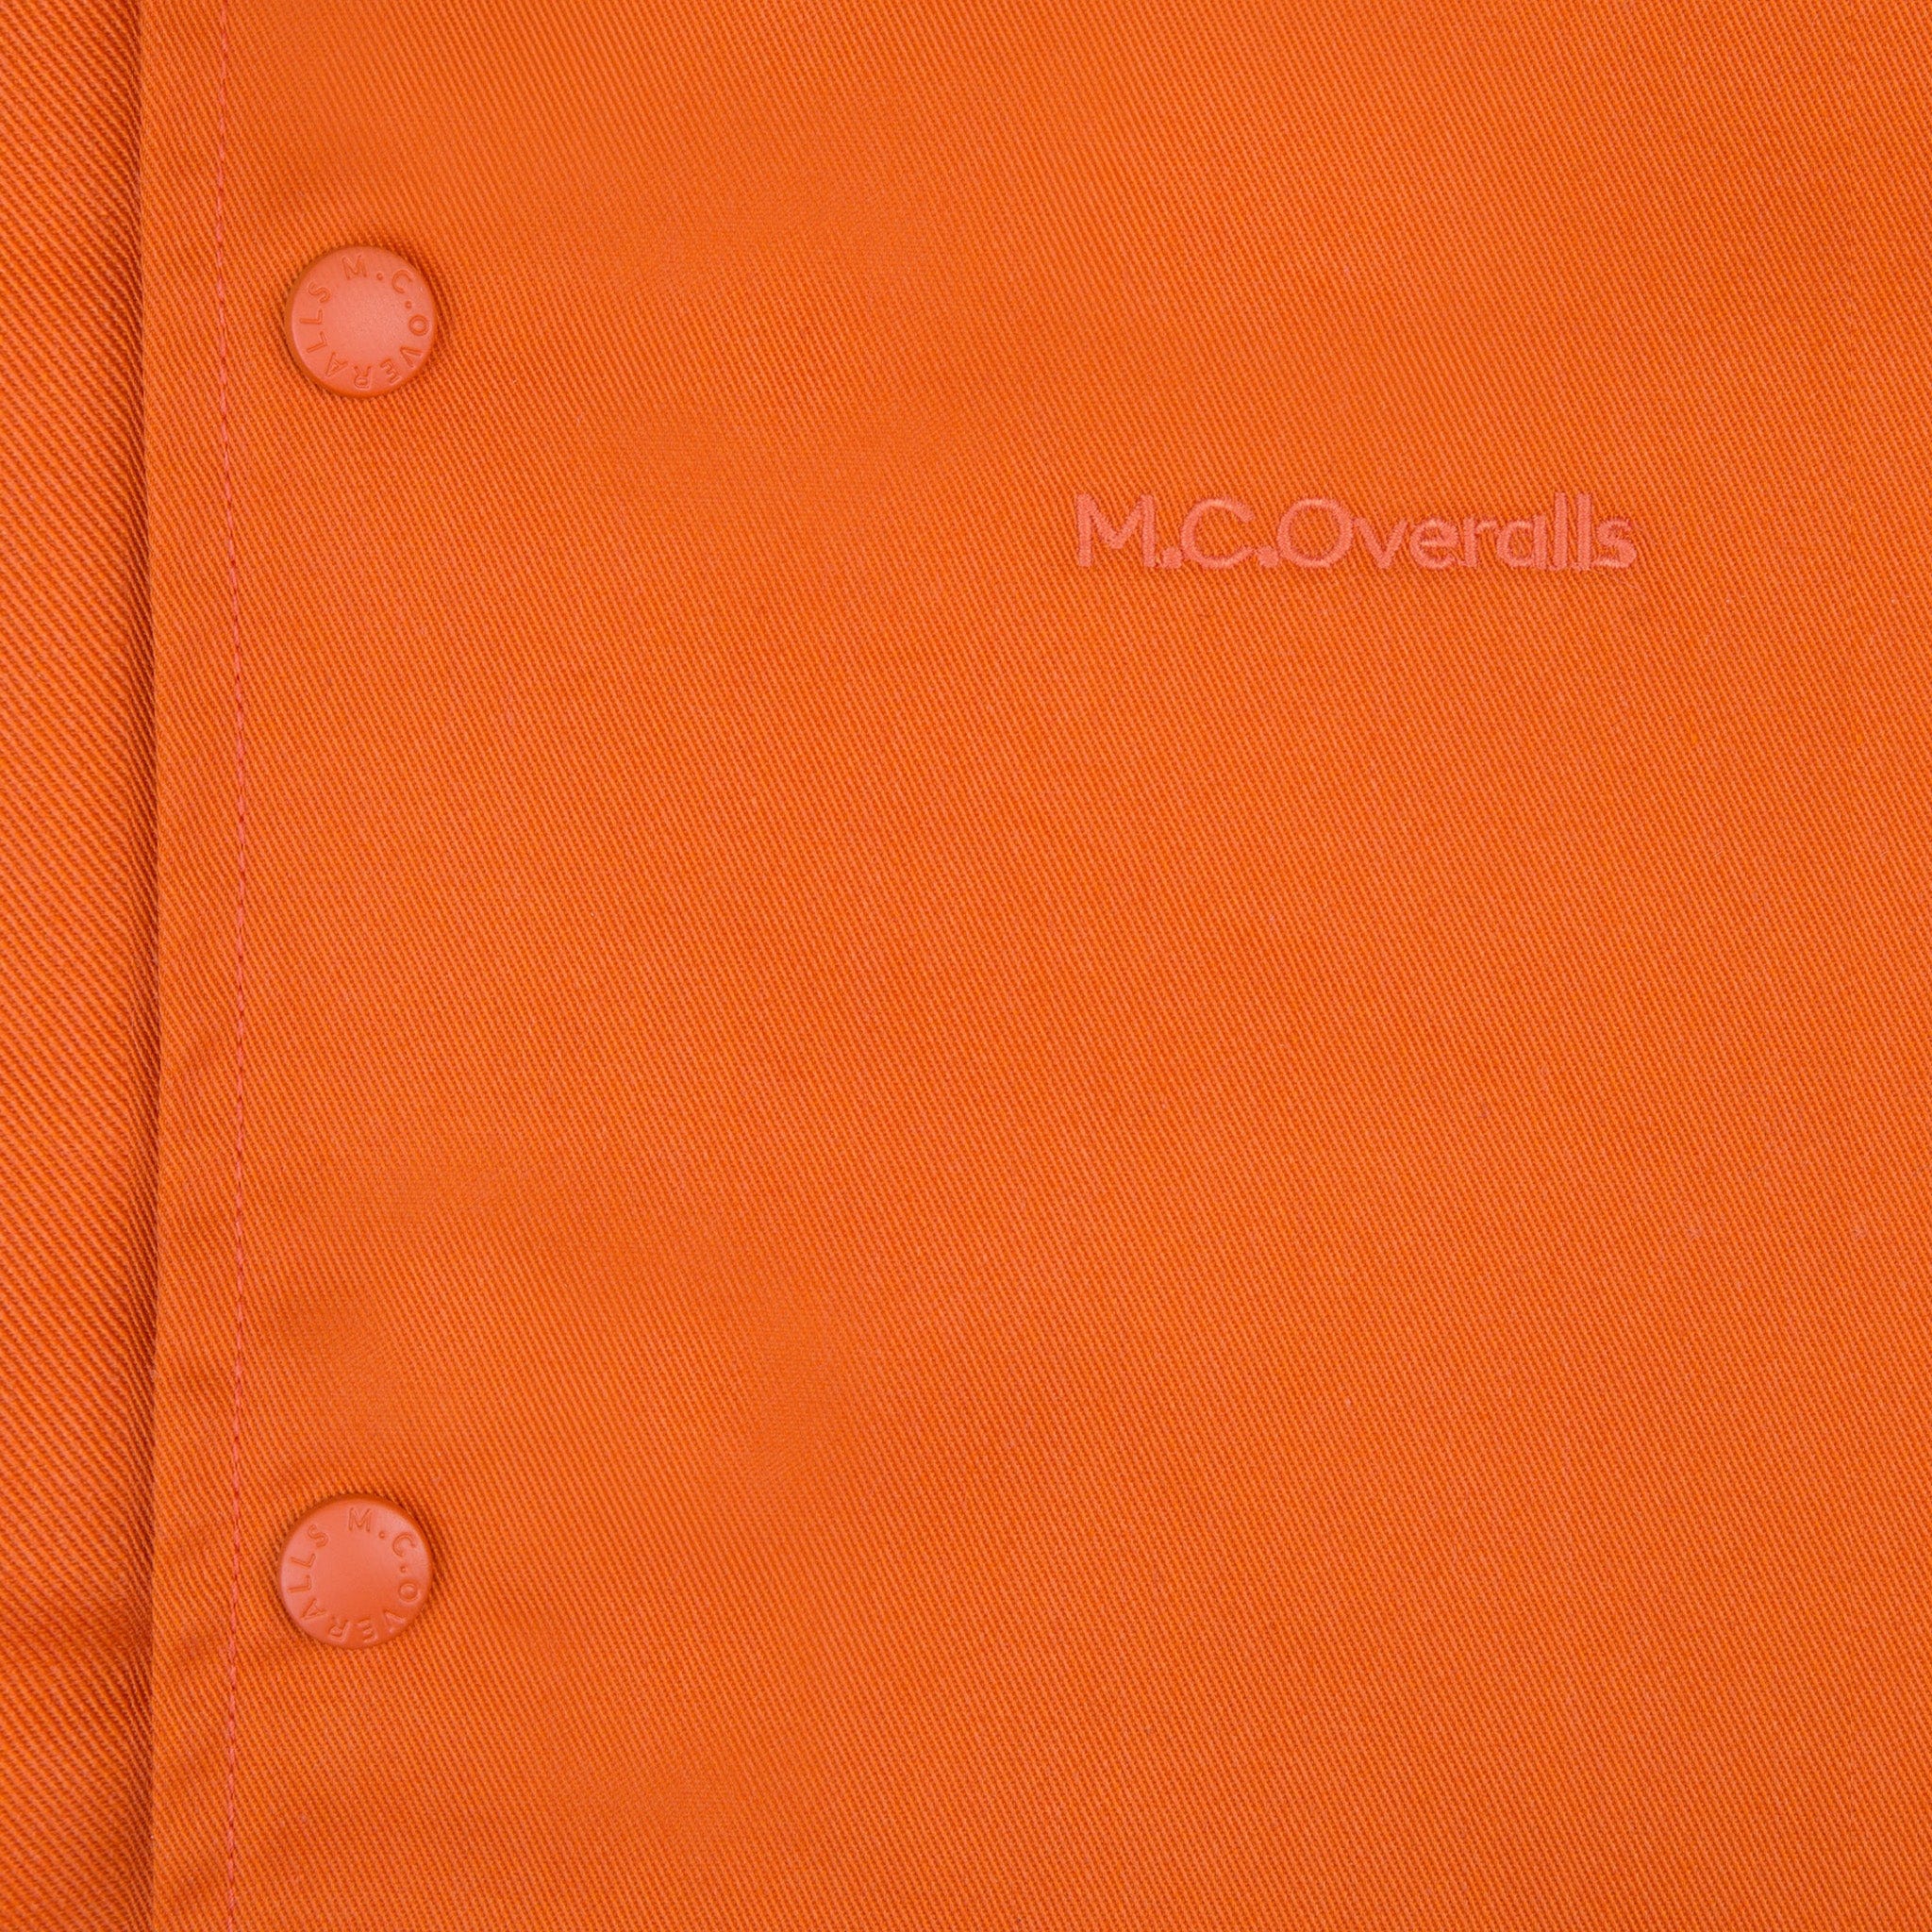 Logo of M.C.Overalls on Workwear Polycotton Orange Coach Jacket.